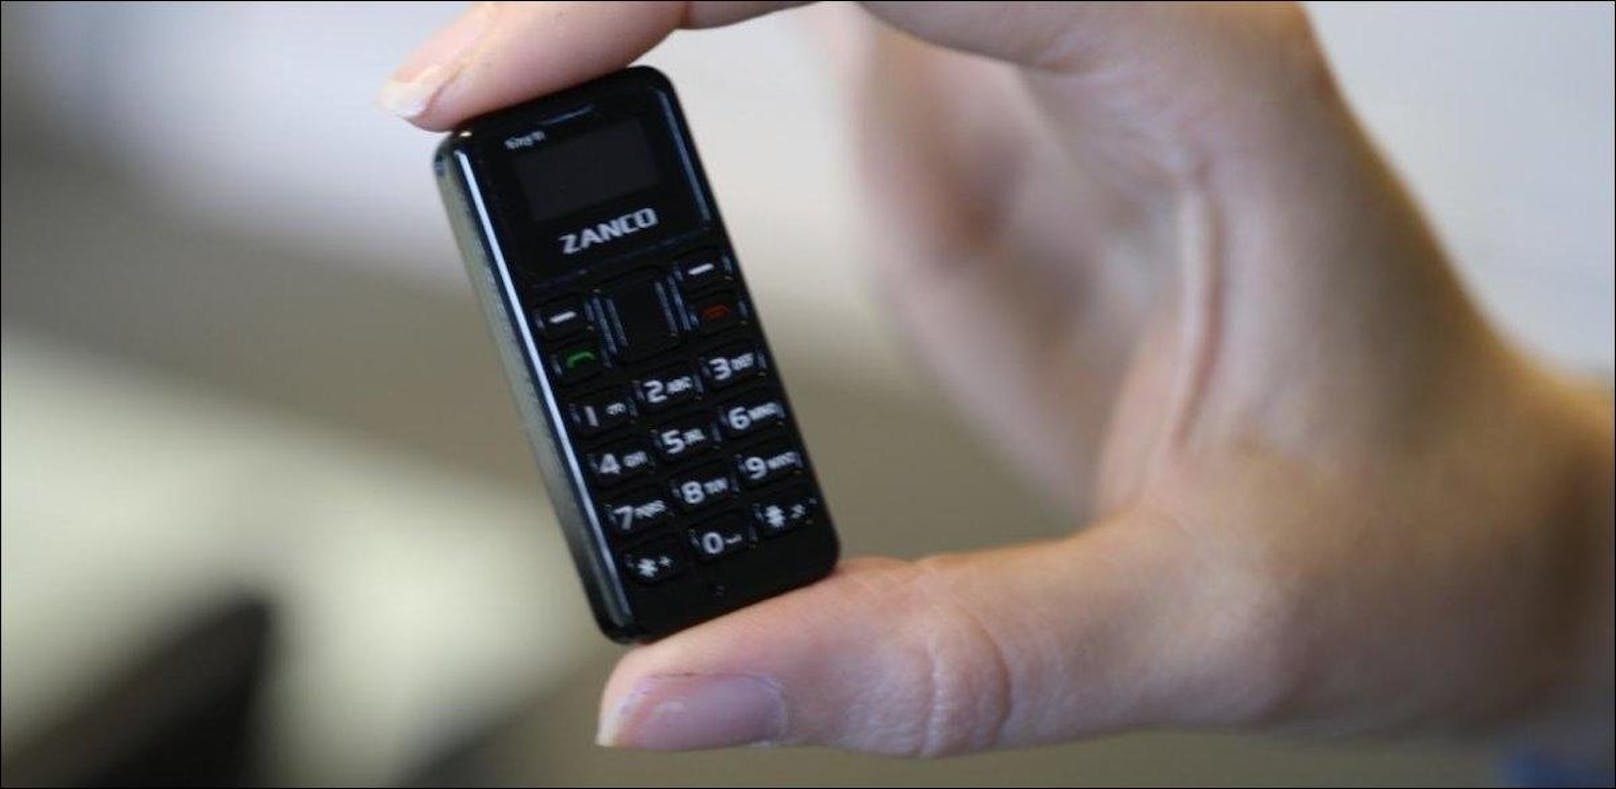 Geht es noch kleiner? Diese Frage hat sich wohl Zanco gestellt. Und mit dem Tiny T1 gleich die Antwort geliefert. Das Gerät ist laut den Angaben des Herstellers das bisher kleinste verfügbare Mobiltelefon. Mit einer Länge von 46,7 Millimetern ist das Handy kleiner als der Daumen einer erwachsenen Person und wiegt lediglich 13 Gramm. Das Gerät verfügt über ein 0,49 Zoll großes OLED-Display mit einer Auflösung von 64 x 32 Pixeln. Auf dem Gerät können bis zu 300 Telefonnummern und 50 SMS gespeichert werden. Einziger Haken: Das Tiny T1 verbindet sich mit dem 2G-Netz.